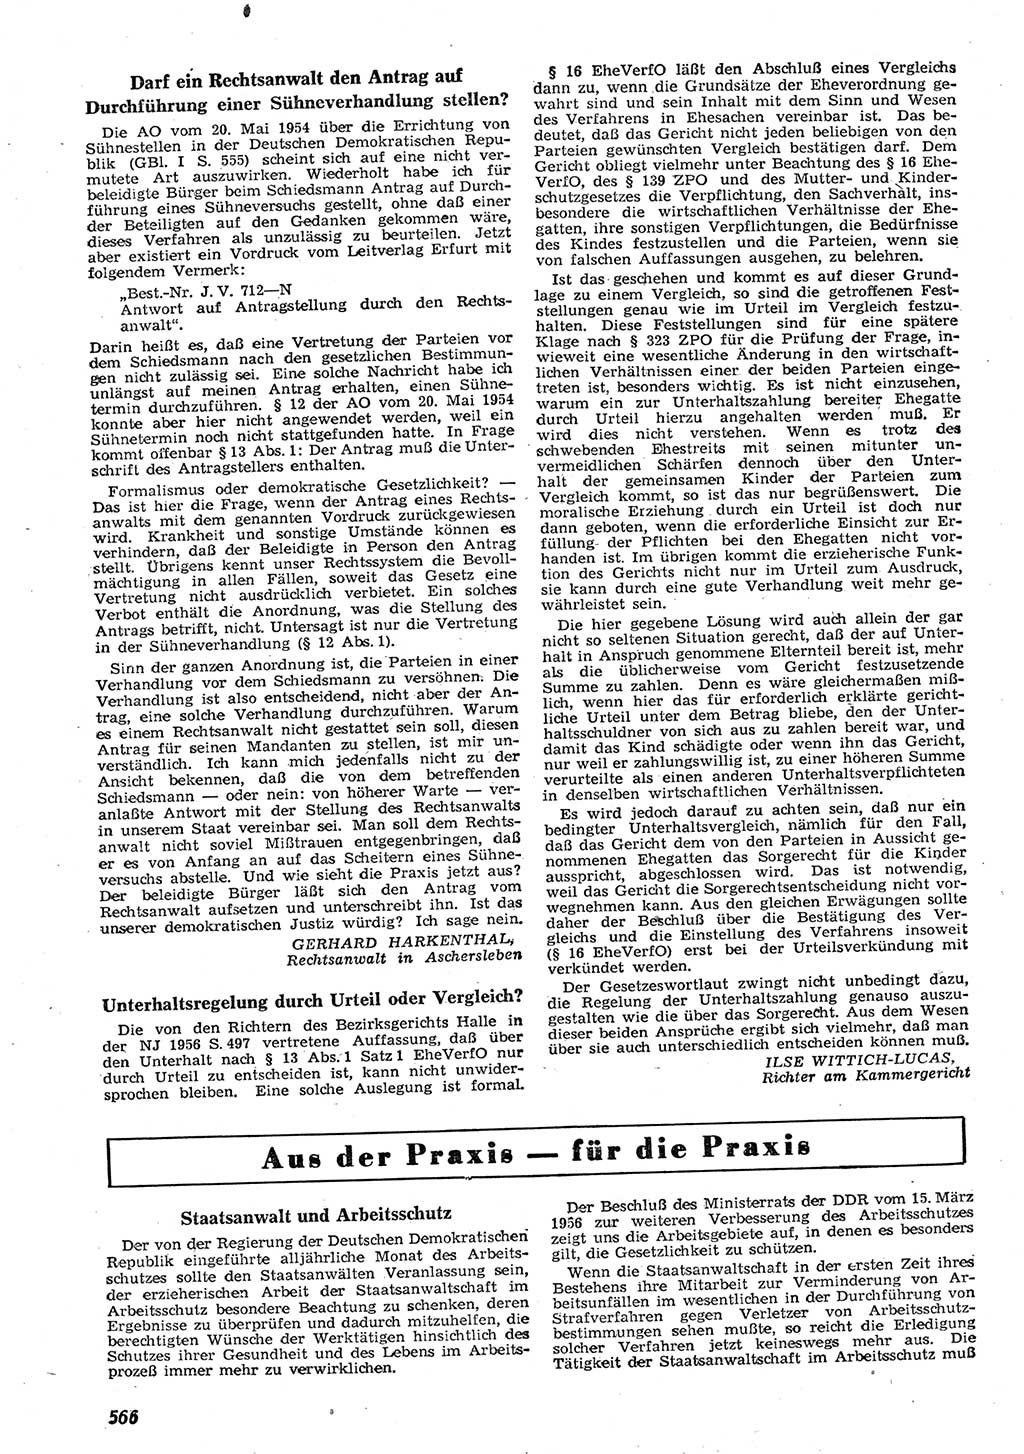 Neue Justiz (NJ), Zeitschrift für Recht und Rechtswissenschaft [Deutsche Demokratische Republik (DDR)], 10. Jahrgang 1956, Seite 566 (NJ DDR 1956, S. 566)